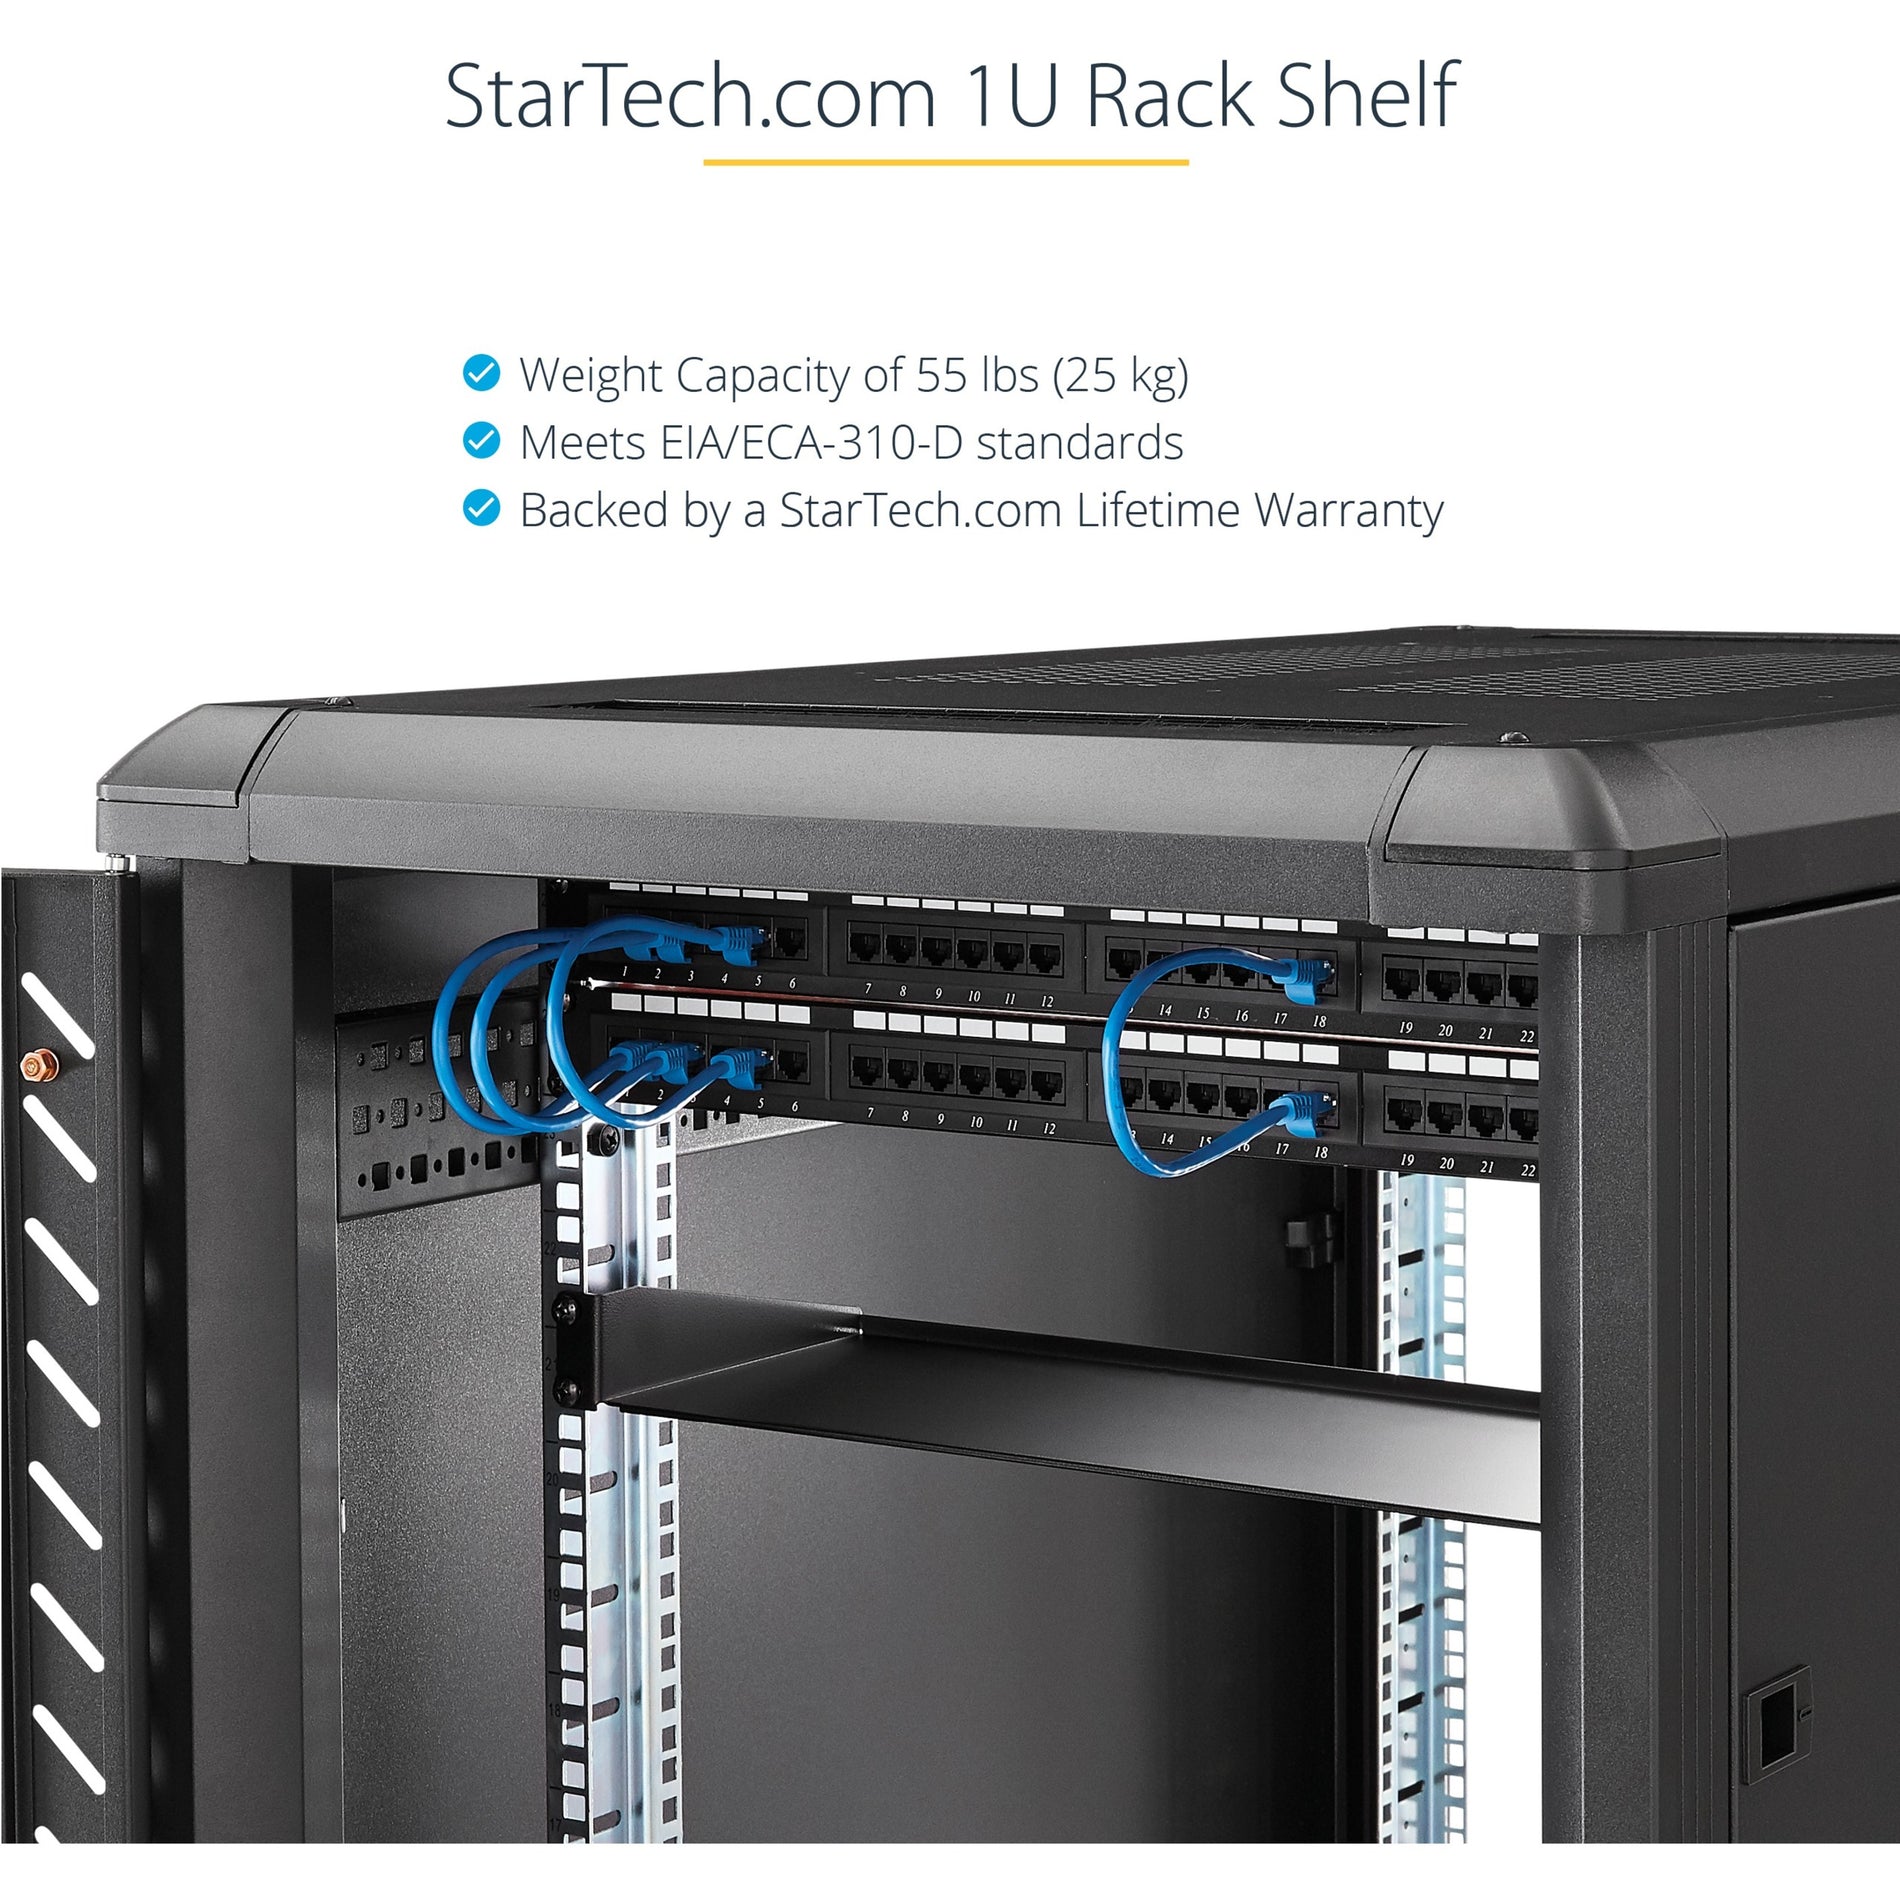 StarTech.com SHELF-1U-12-FIXED-S Universal Rack Shelf, 12" Deep Cantilever Tray for 19" Data/AV/Network Enclosure